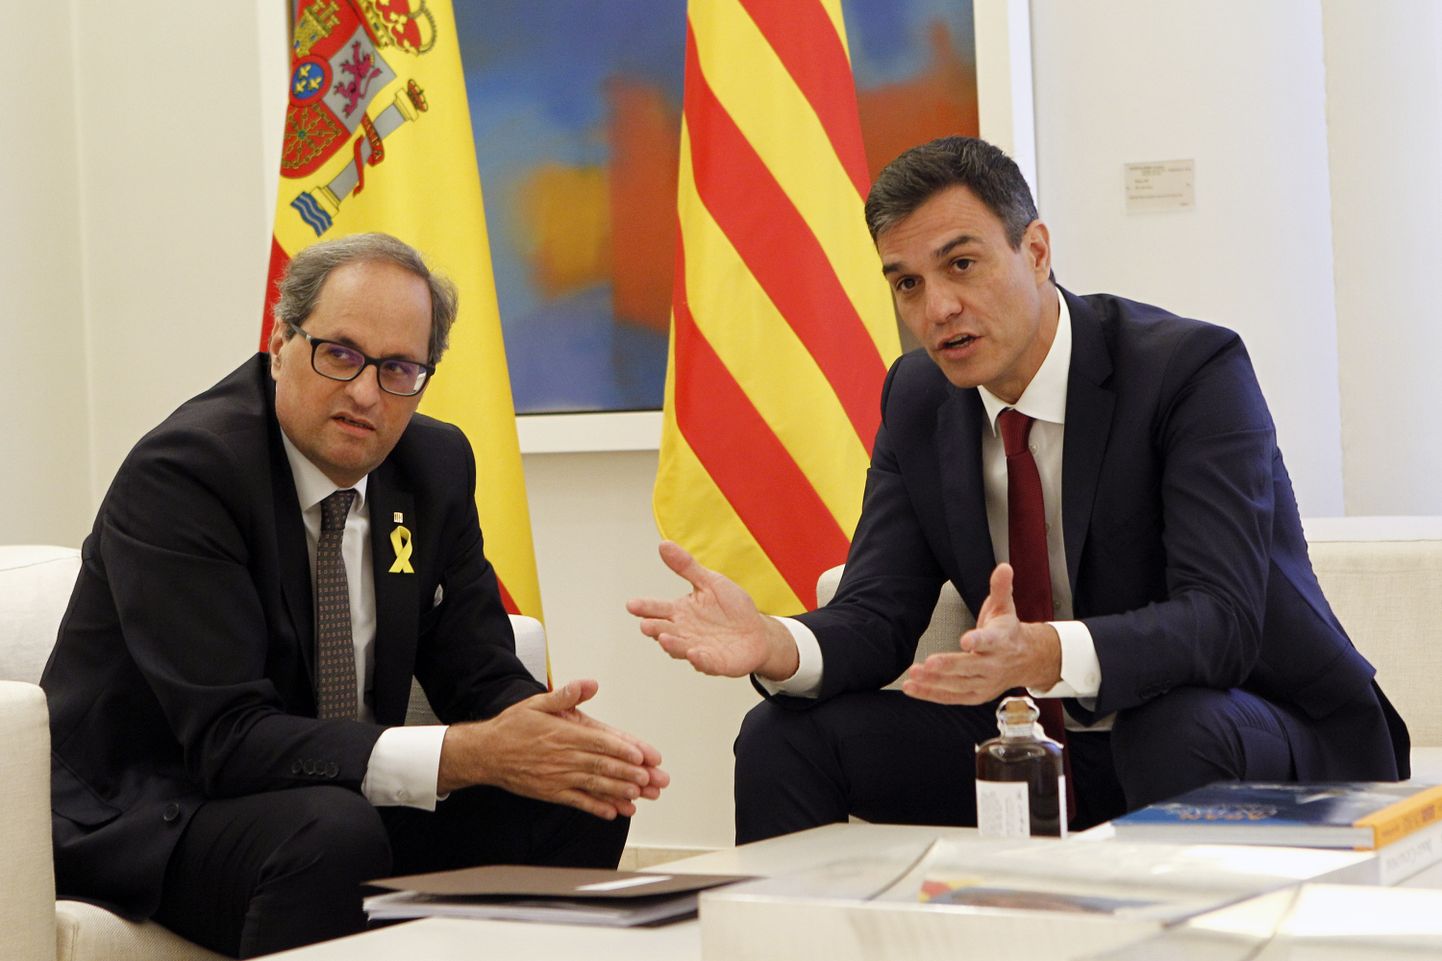 Hispaania peaminister Pedro Sánchez (paremal) võttis täna Madridis La Moncloa palees vastu Kataloonia presidendi Quim Torra. Tegu oli esimese korraga, kui Hispaania keskvalitsuse ja Kataloonia regionaalvalitsuse uued juhid omavahel kohtusid.